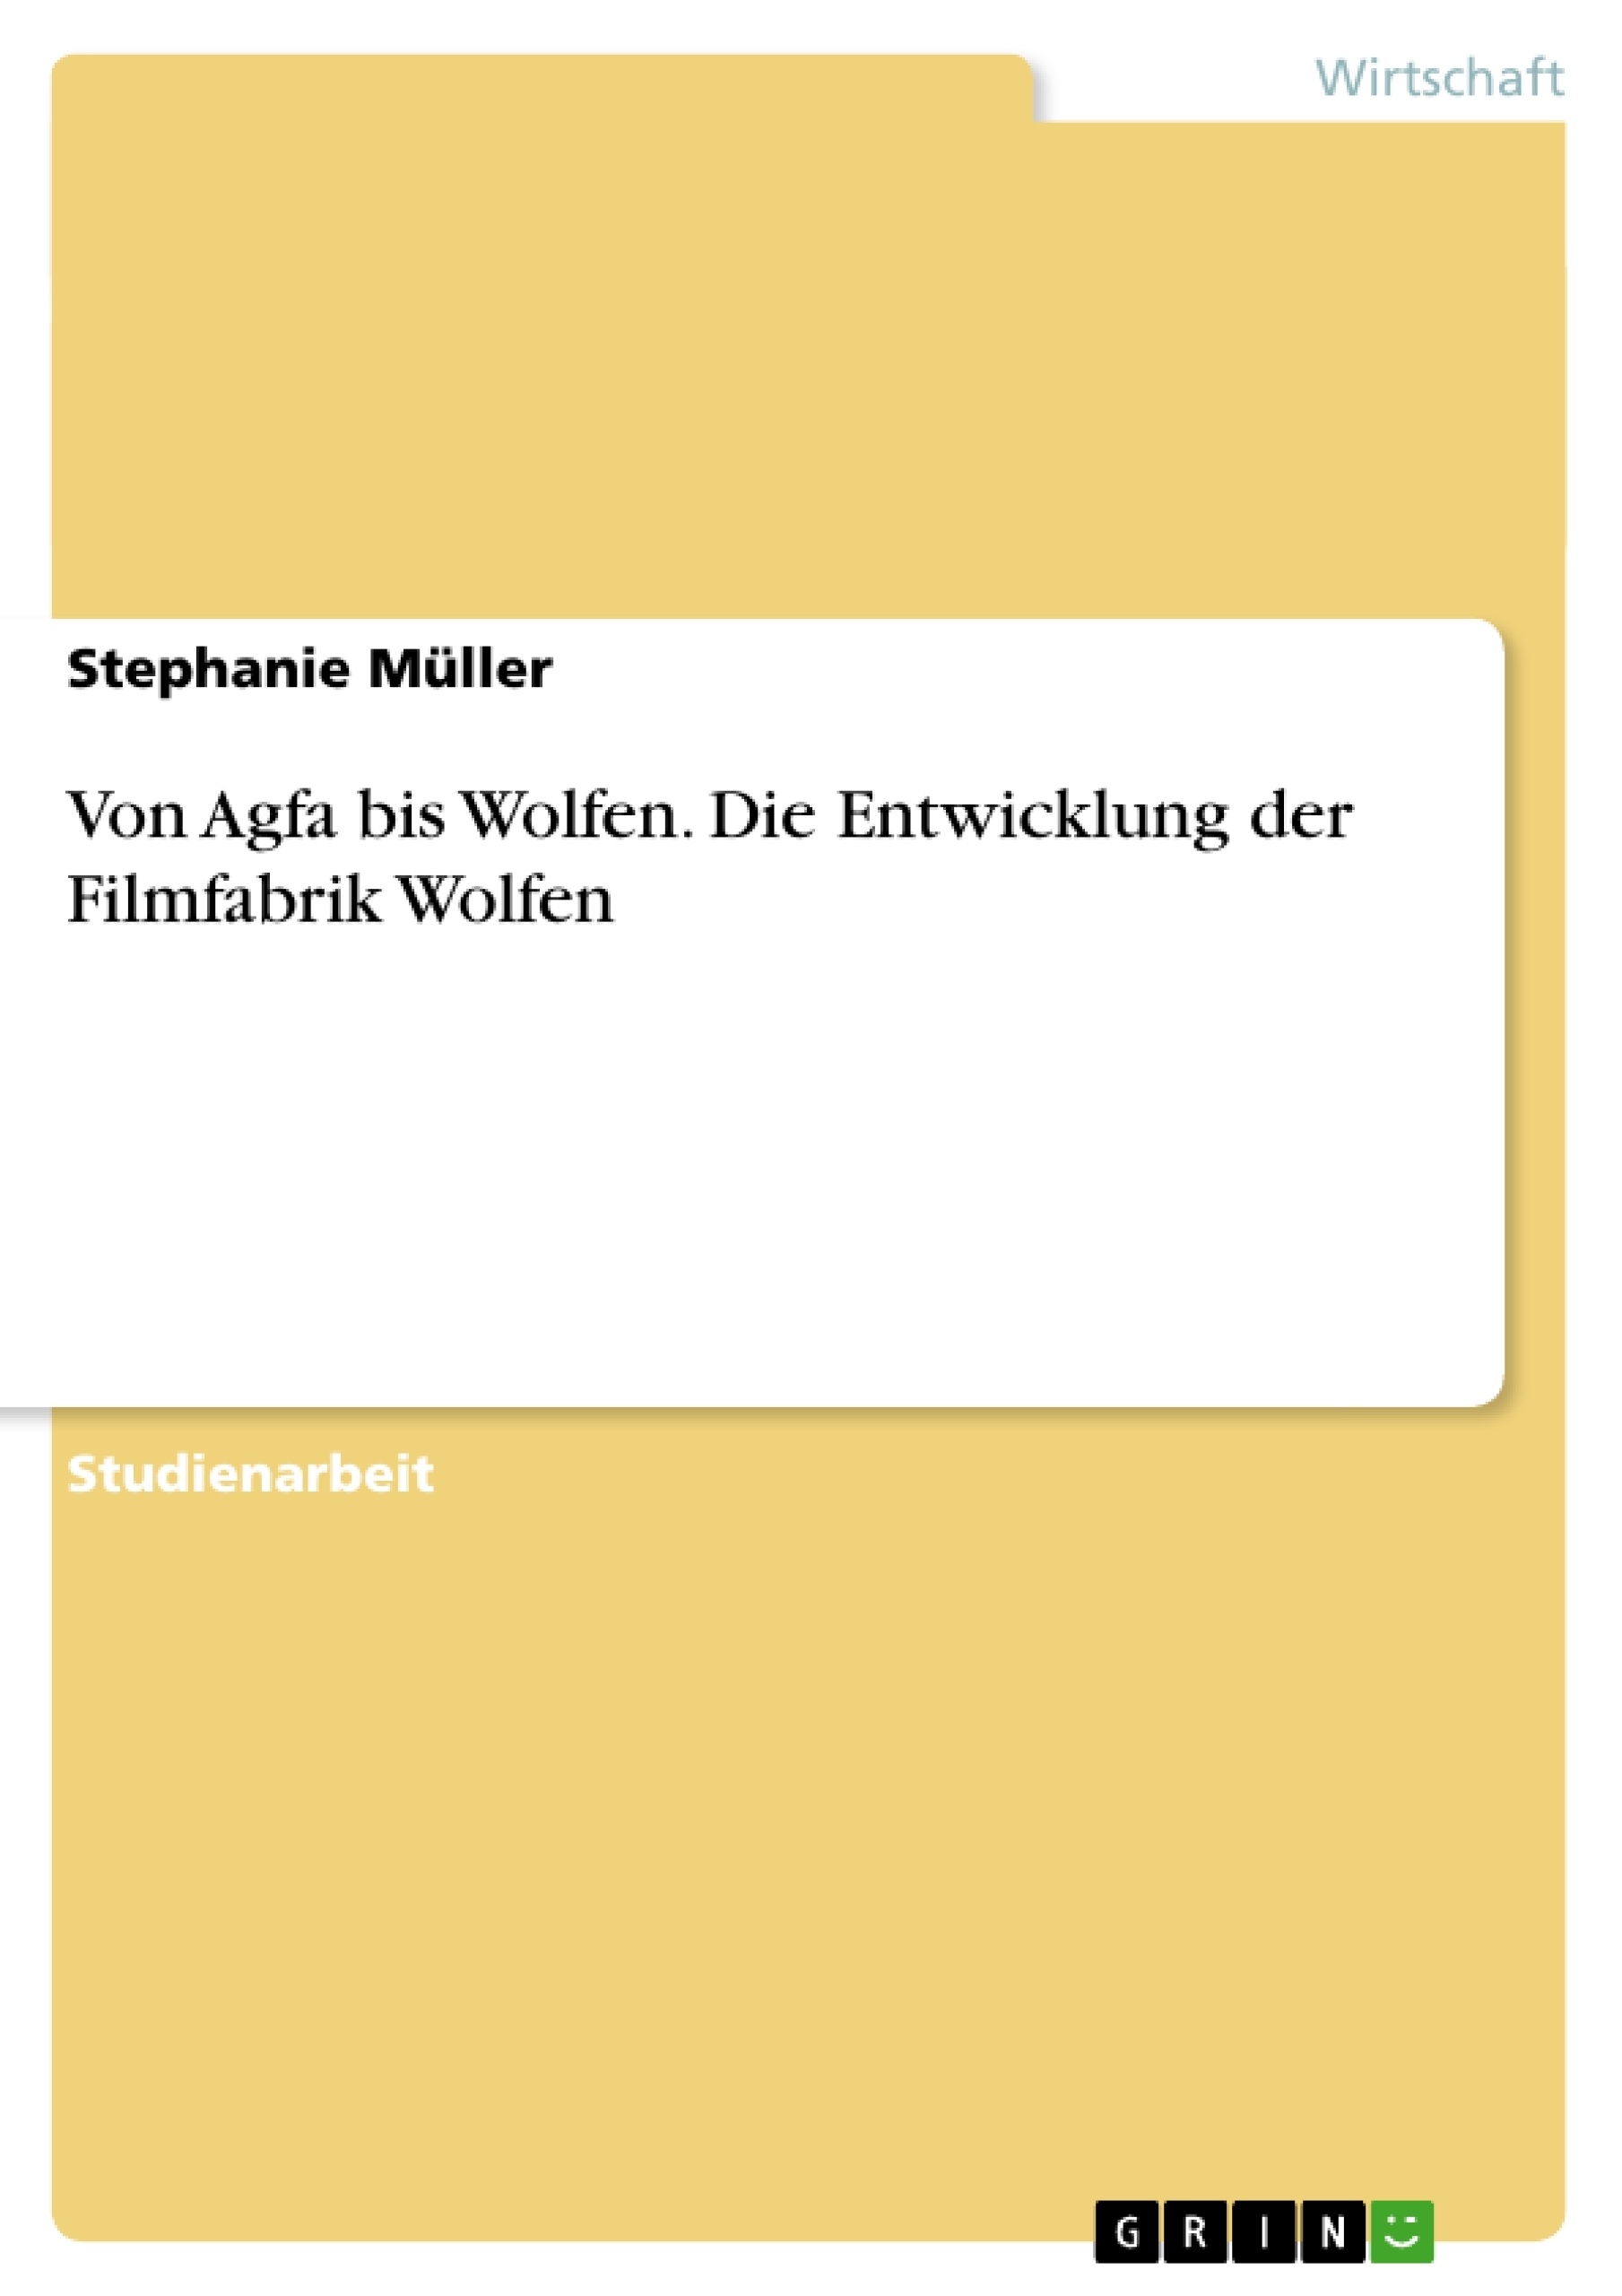 Titre: Von Agfa bis Wolfen. Die Entwicklung der Filmfabrik Wolfen